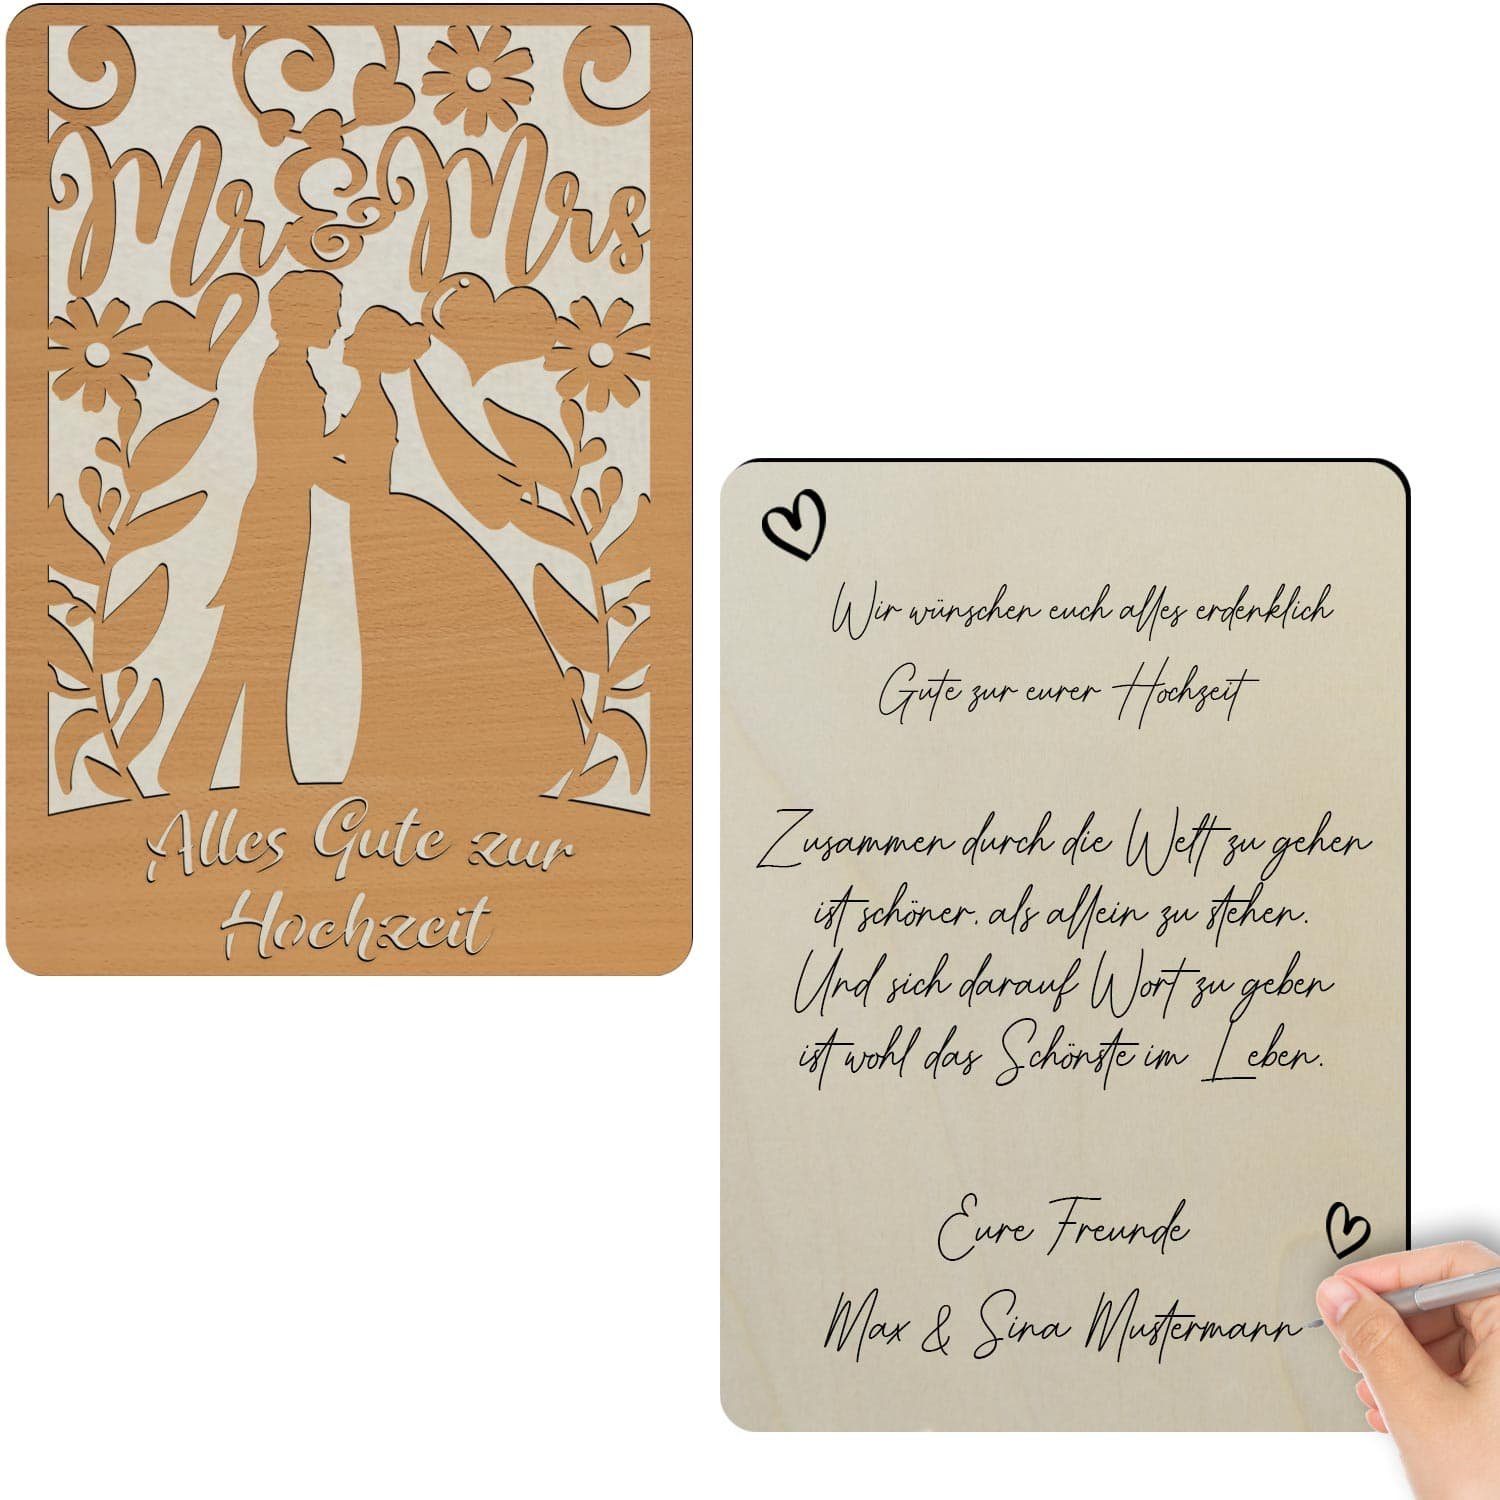 Alles Namofactur Gute Glückwunschkarte zur aus zur Glückwunschkarte Hochzeit, aus Hochzeit Holz Holz,